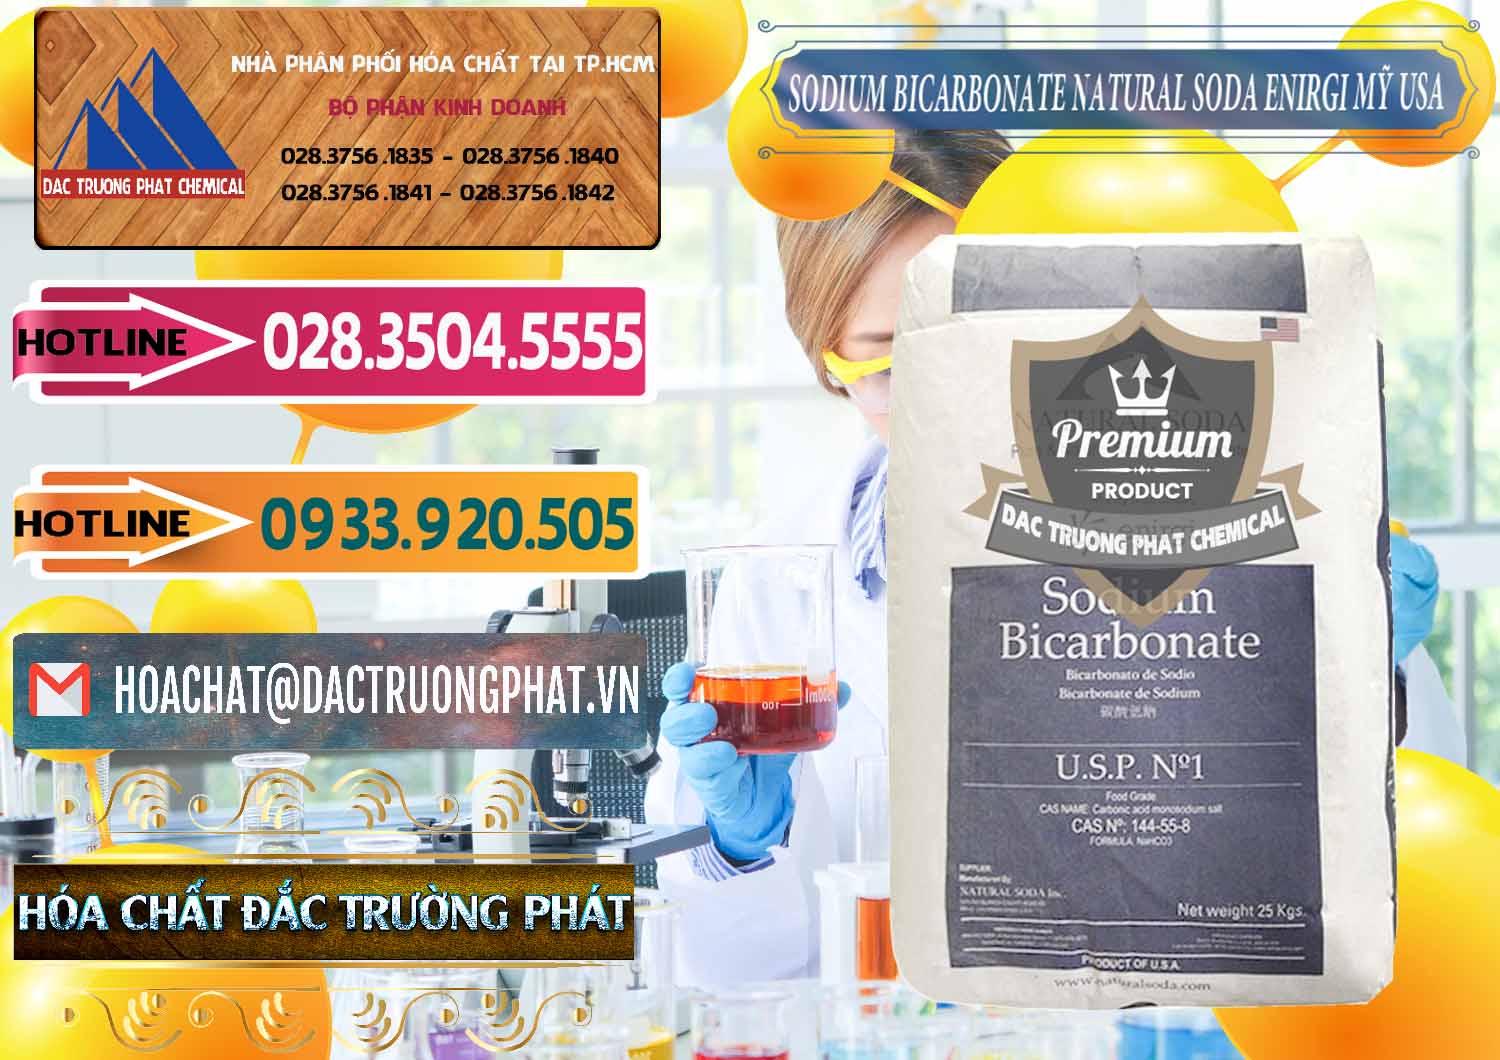 Nơi cung ứng _ bán Sodium Bicarbonate – Bicar NaHCO3 Food Grade Natural Soda Enirgi Mỹ USA - 0257 - Đơn vị chuyên kinh doanh và cung cấp hóa chất tại TP.HCM - dactruongphat.vn